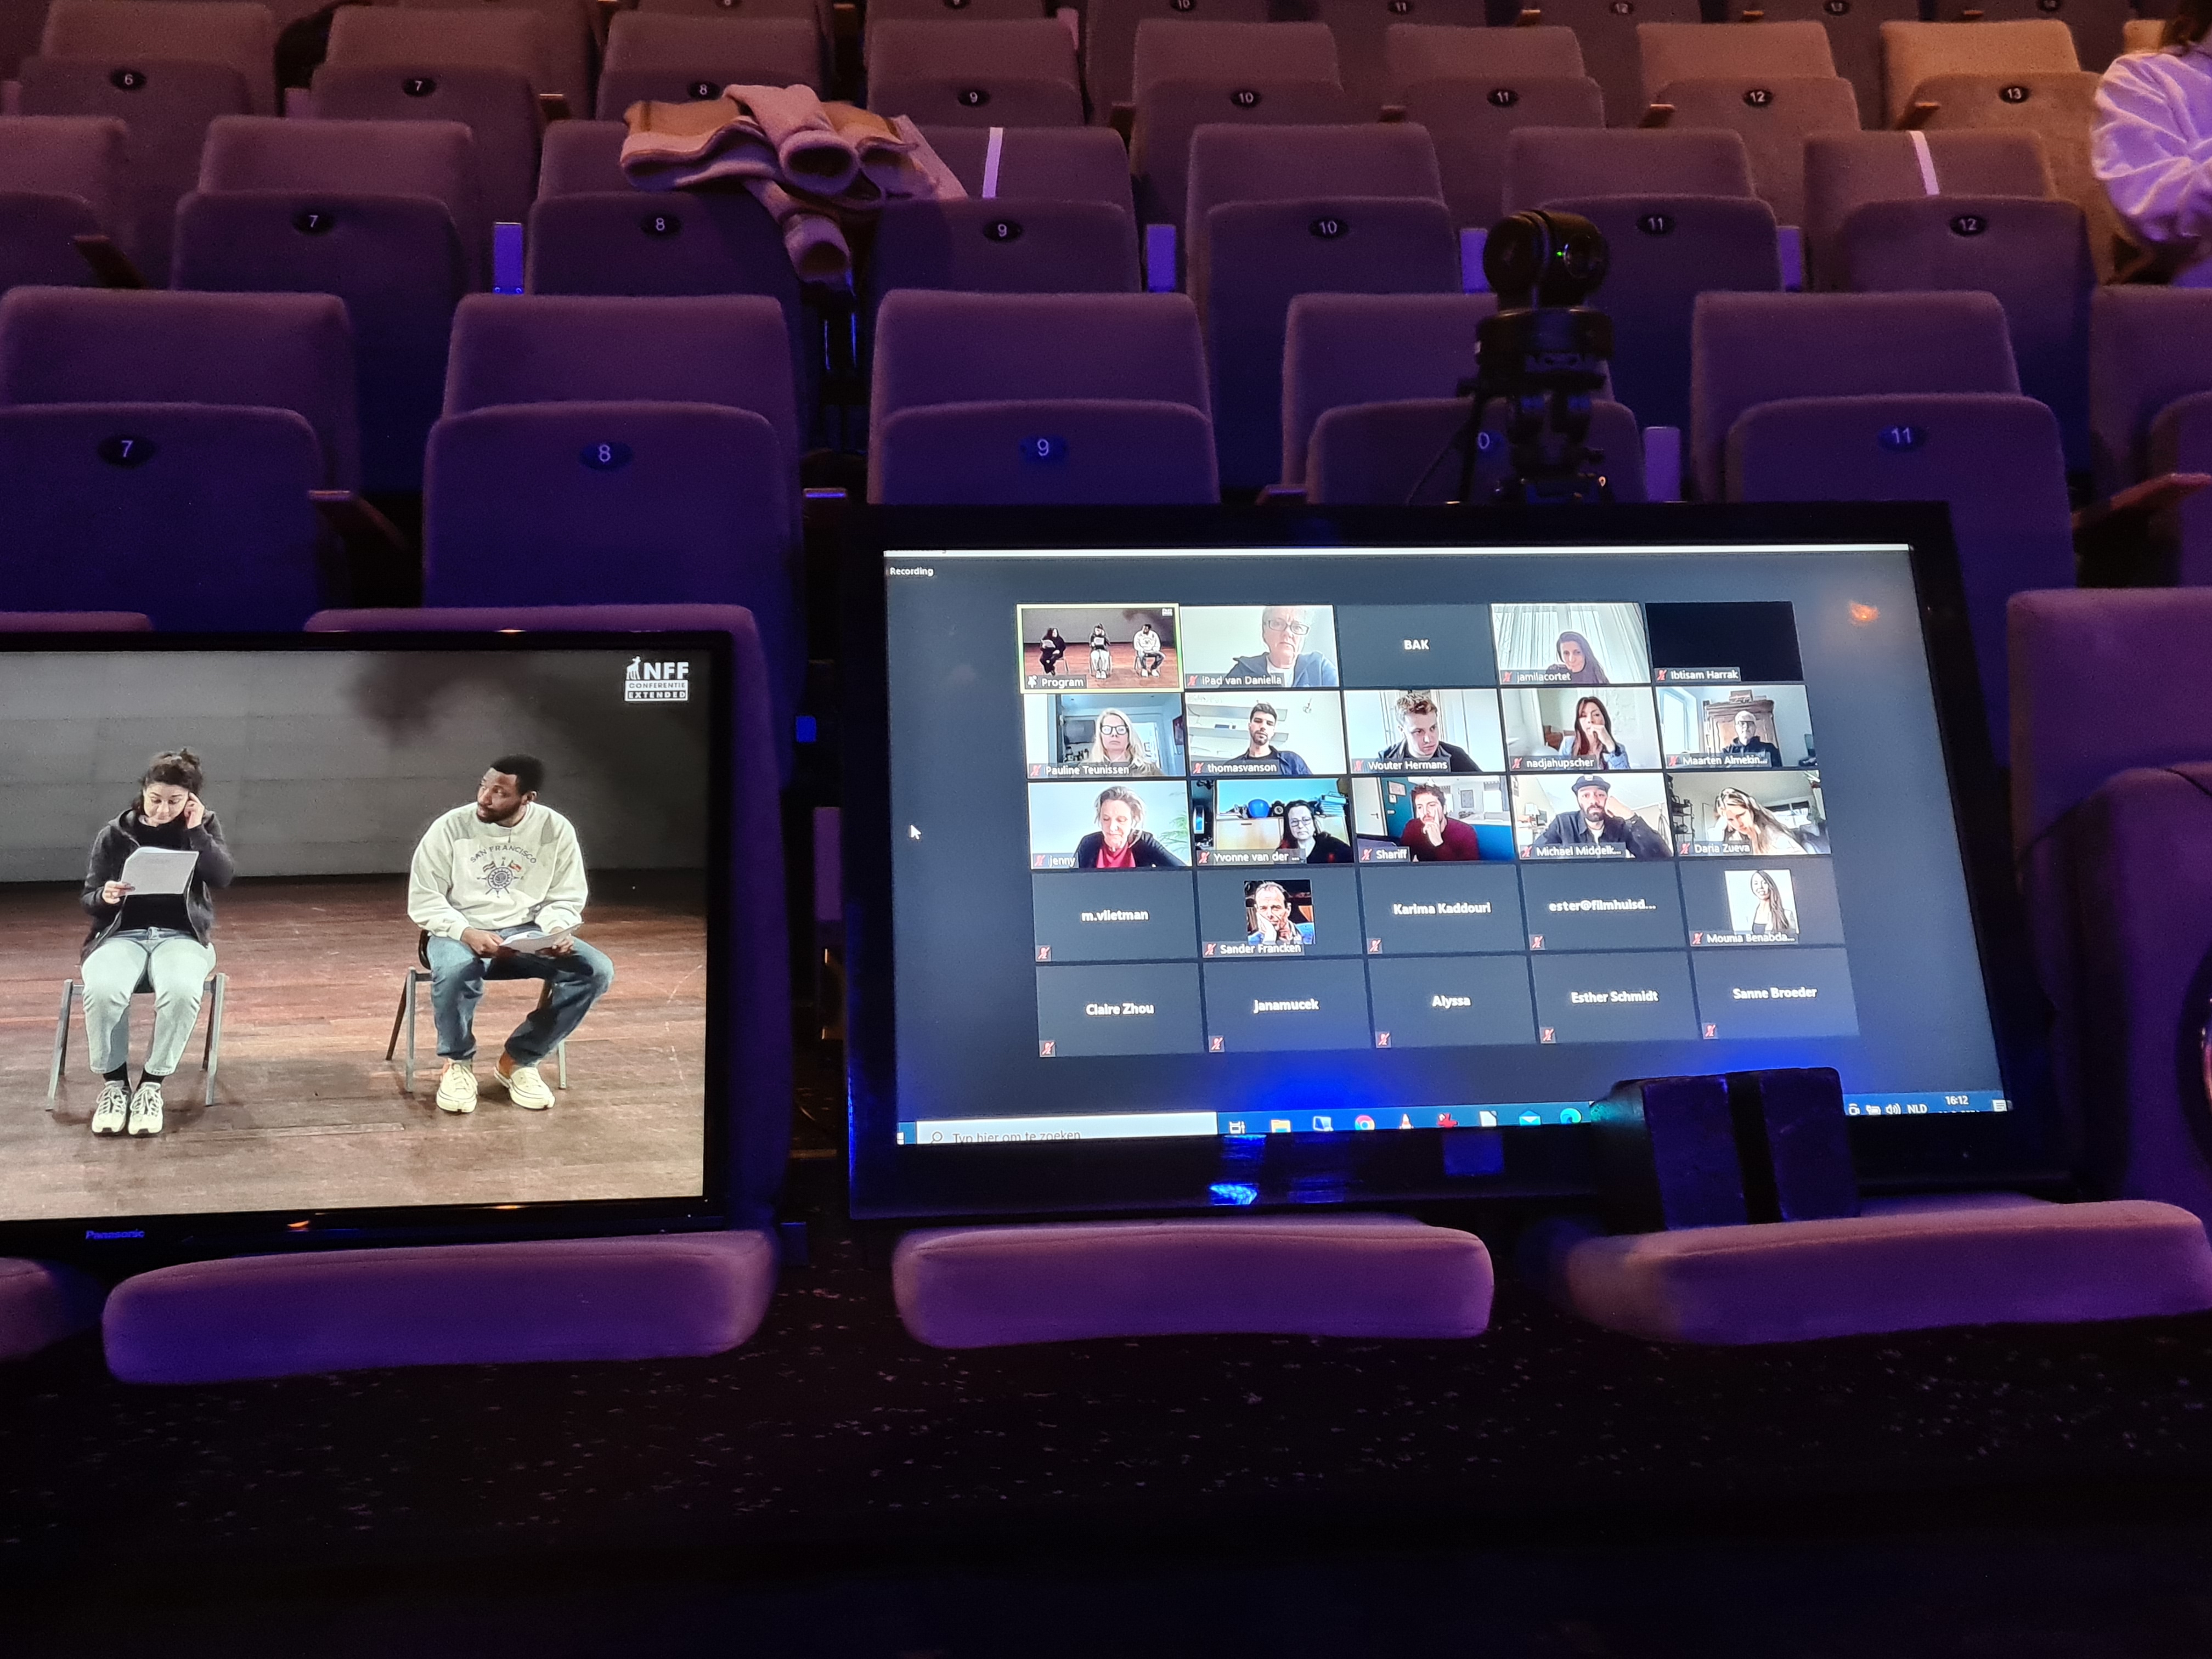 twee laptops met Zoom open staan op de stoelen op de tribune van een theater